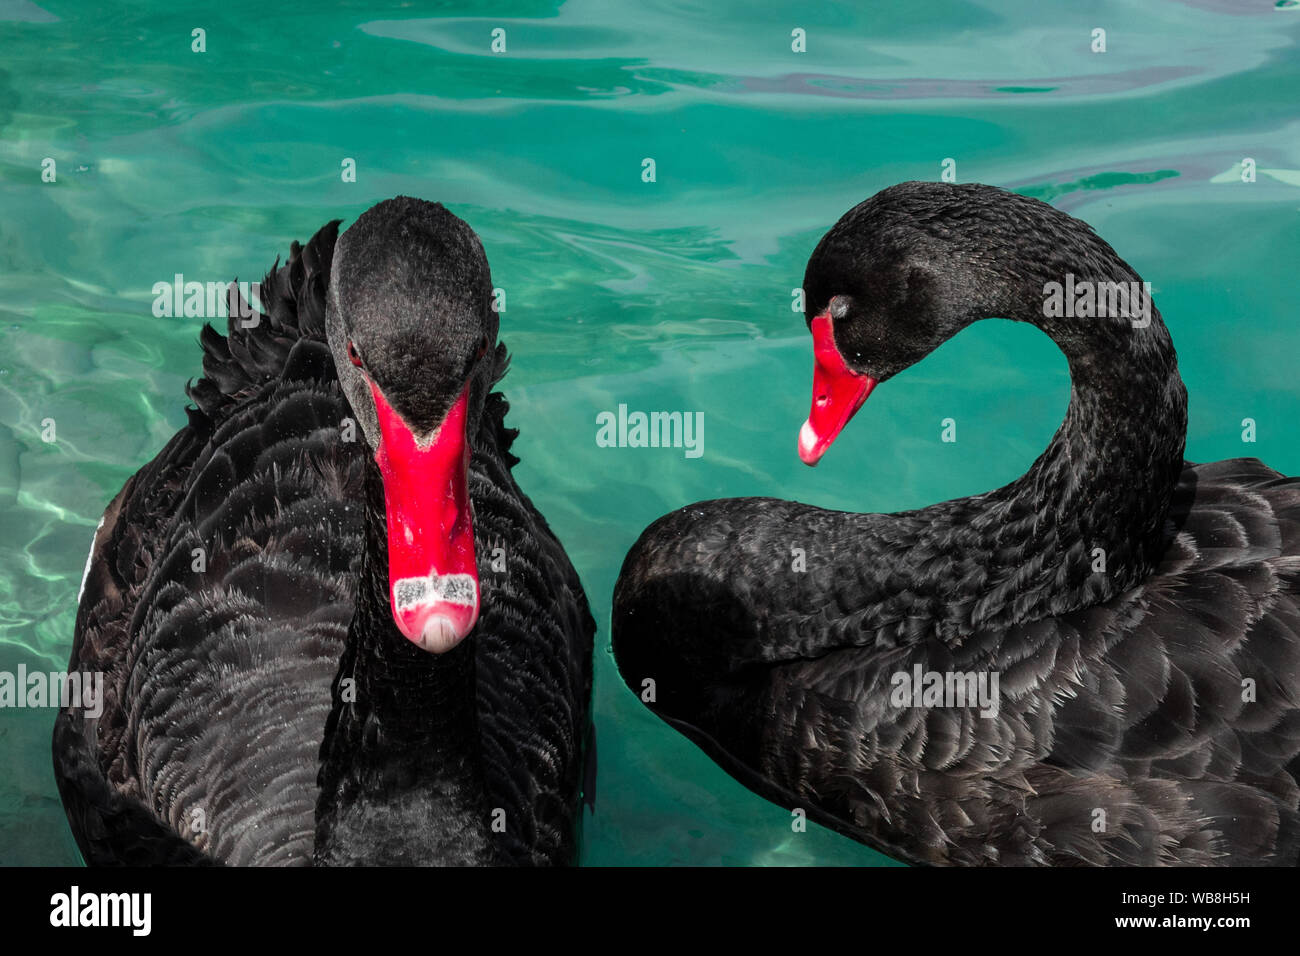 Paar schwarze Schwäne im Teich. Zwei Vögel mit roten Schnäbel Schwimmen im blauen Wasser des Sees. Liebe Symbol oder romantische Beziehungen Stockfoto